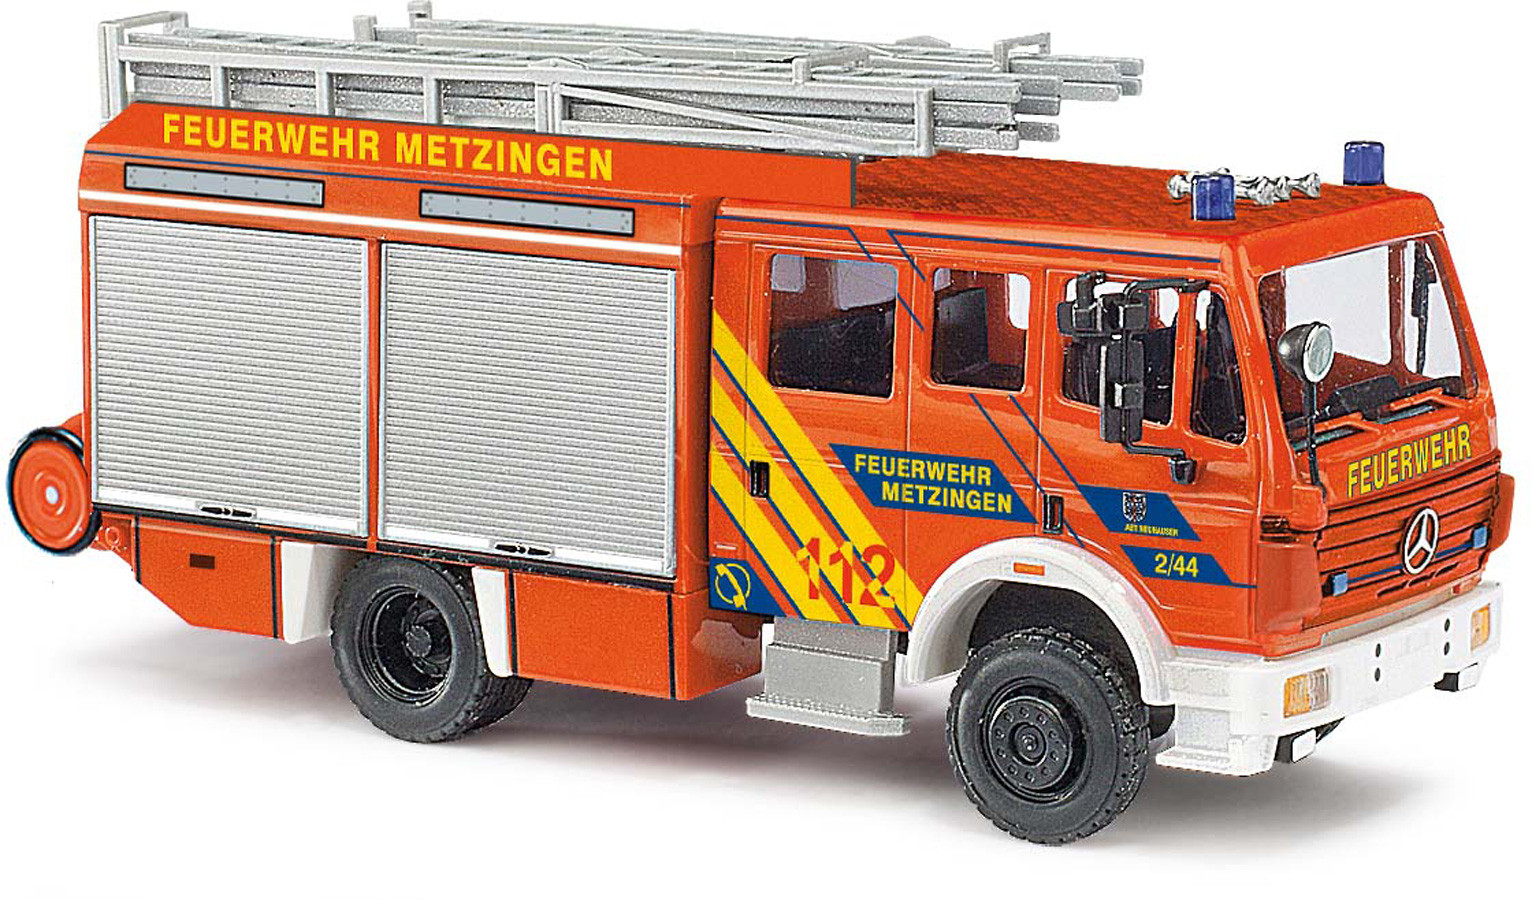 Busch MB MK 94 HLF Feuerwehr Metzingen, NH Herbst 21